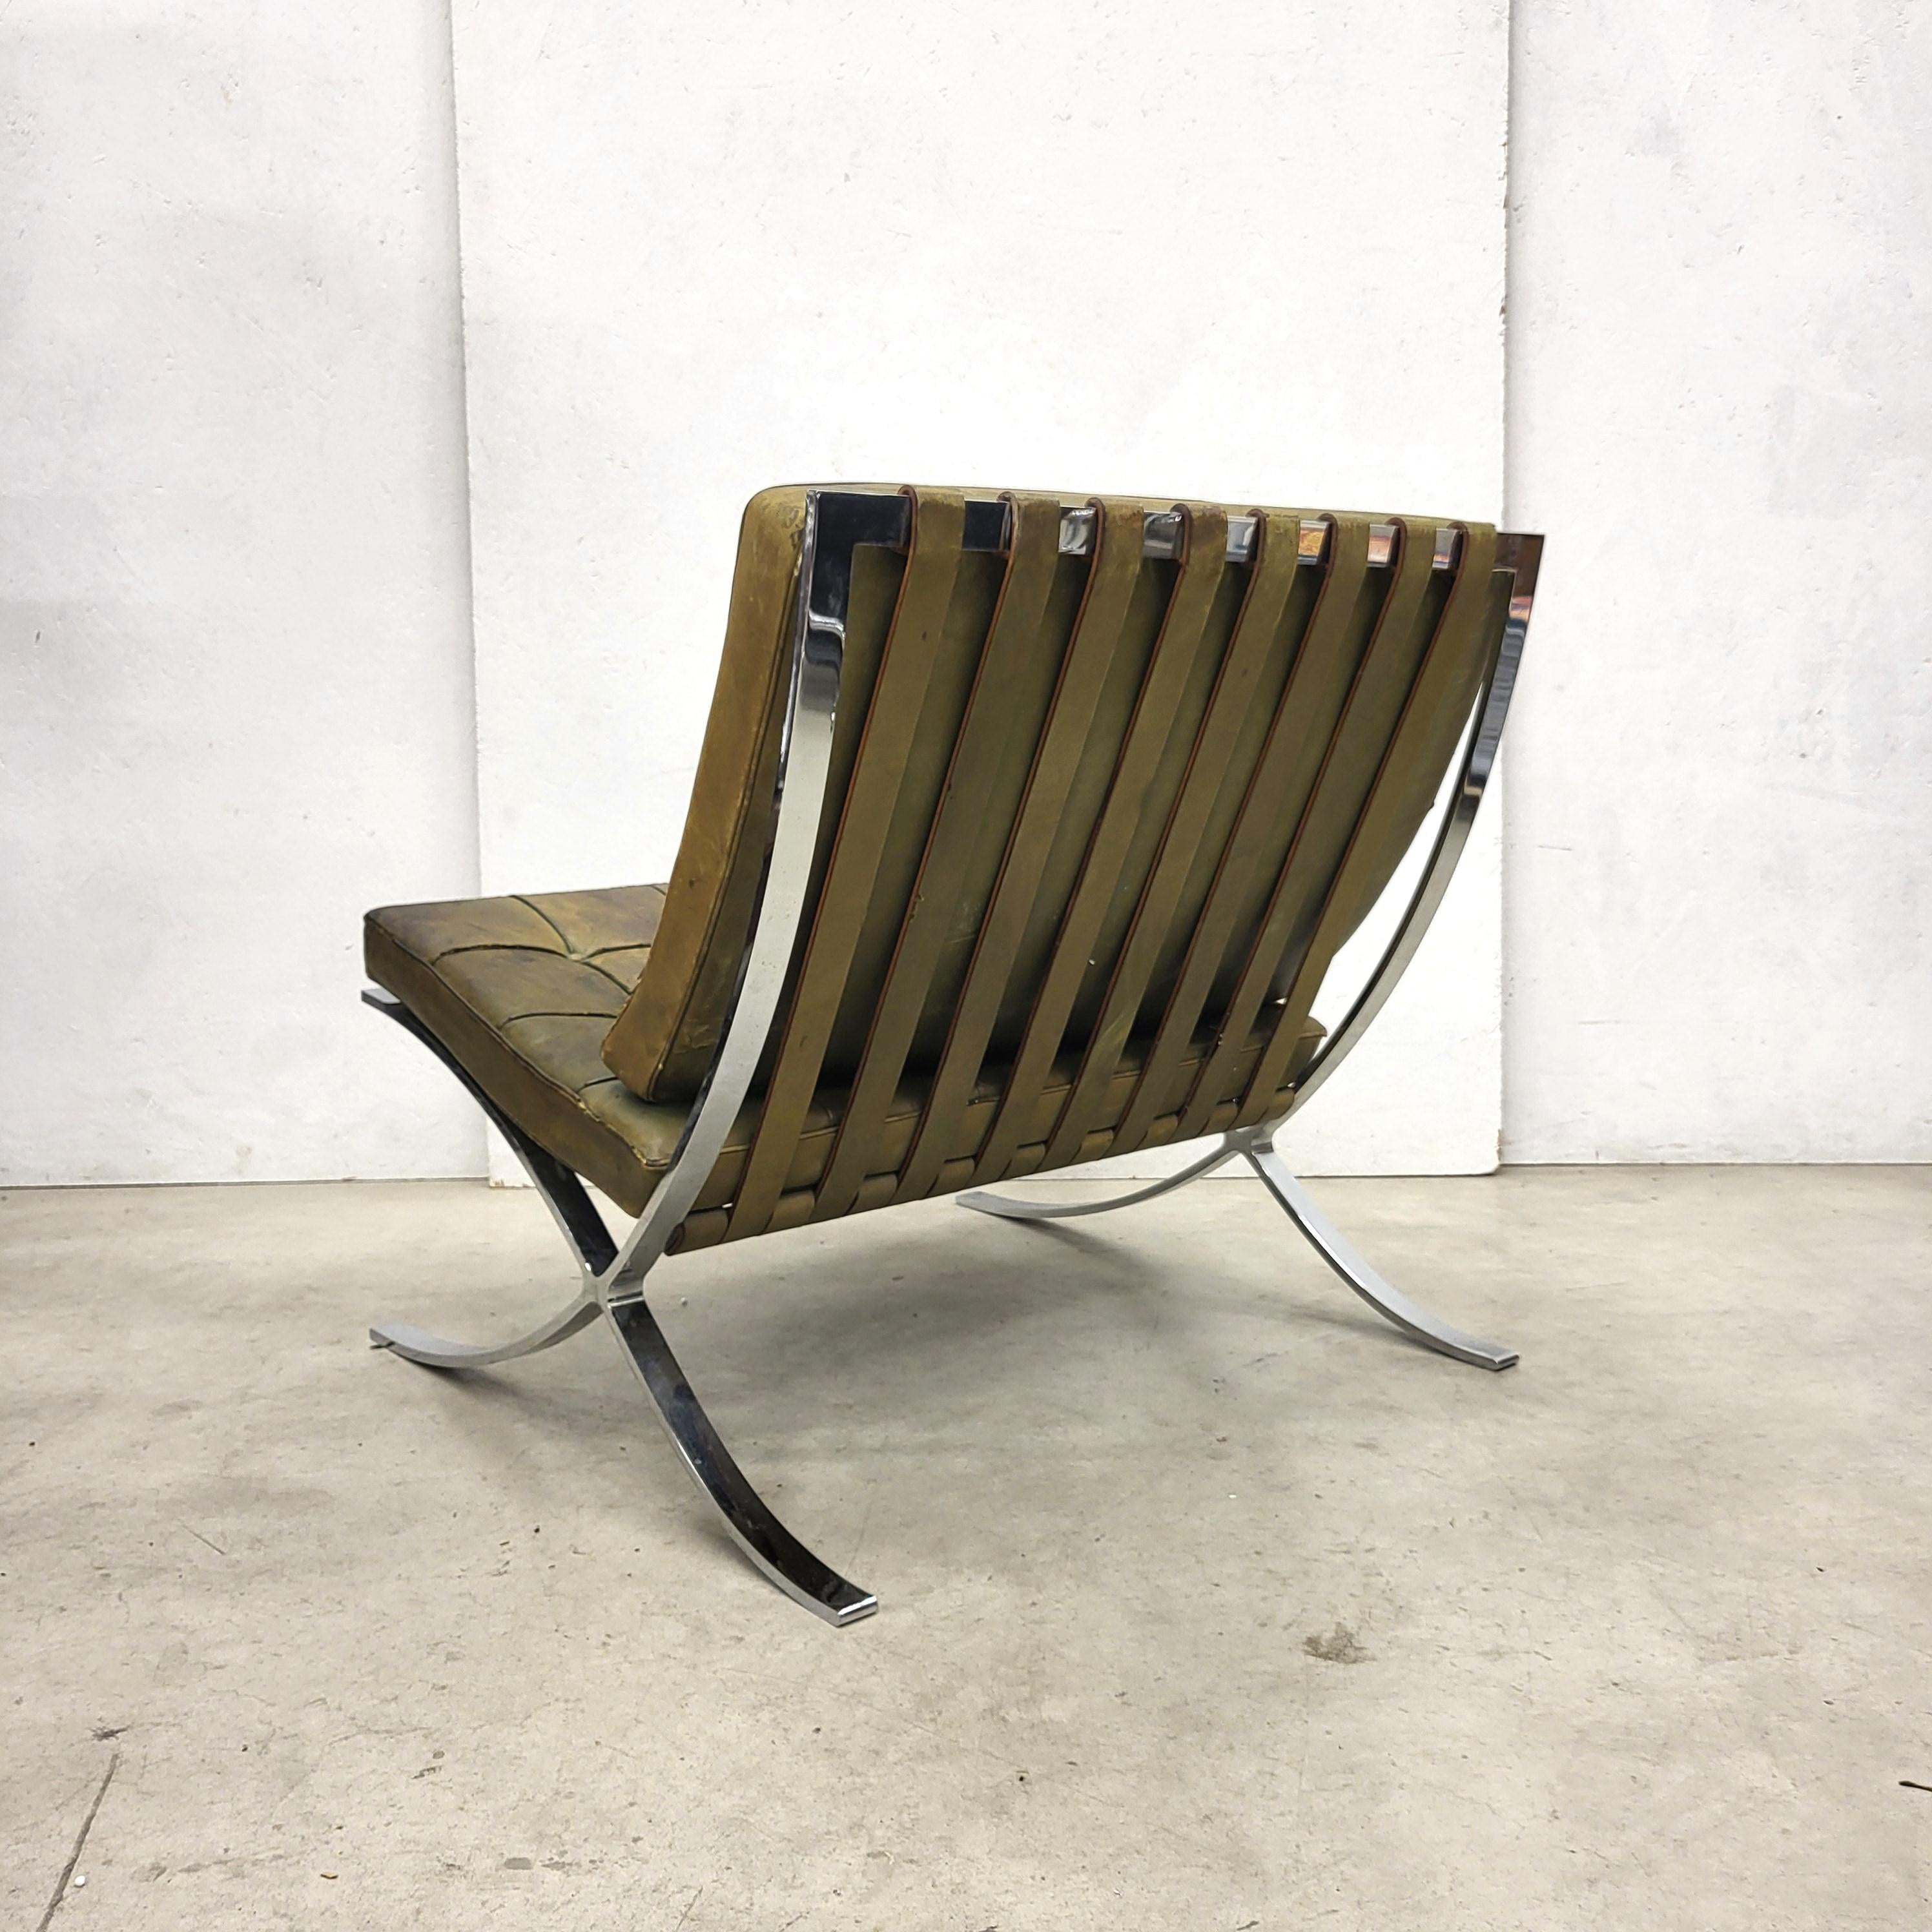 Olivgrüner Barcelona-Stuhl von Mies van der Rohe Knoll, 1970er Jahre (Bauhaus)